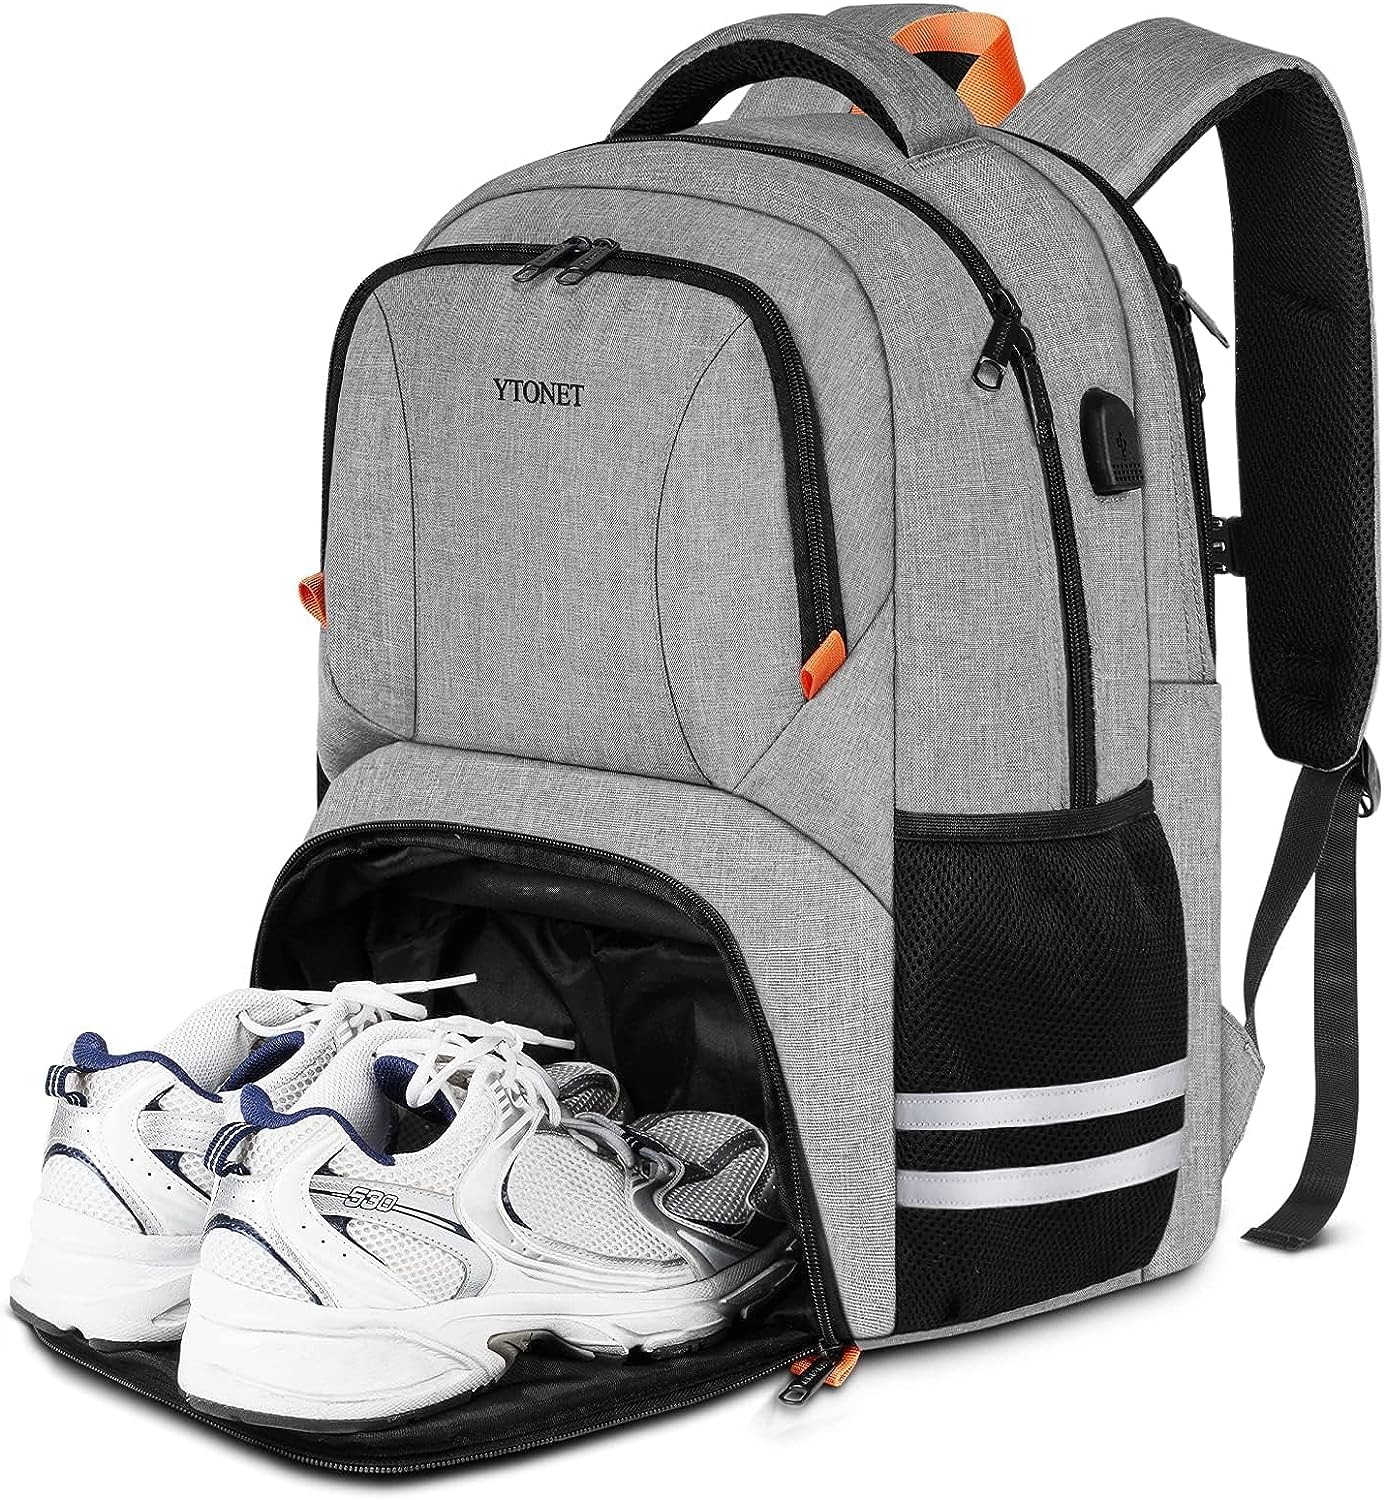 Ytonet Backpack